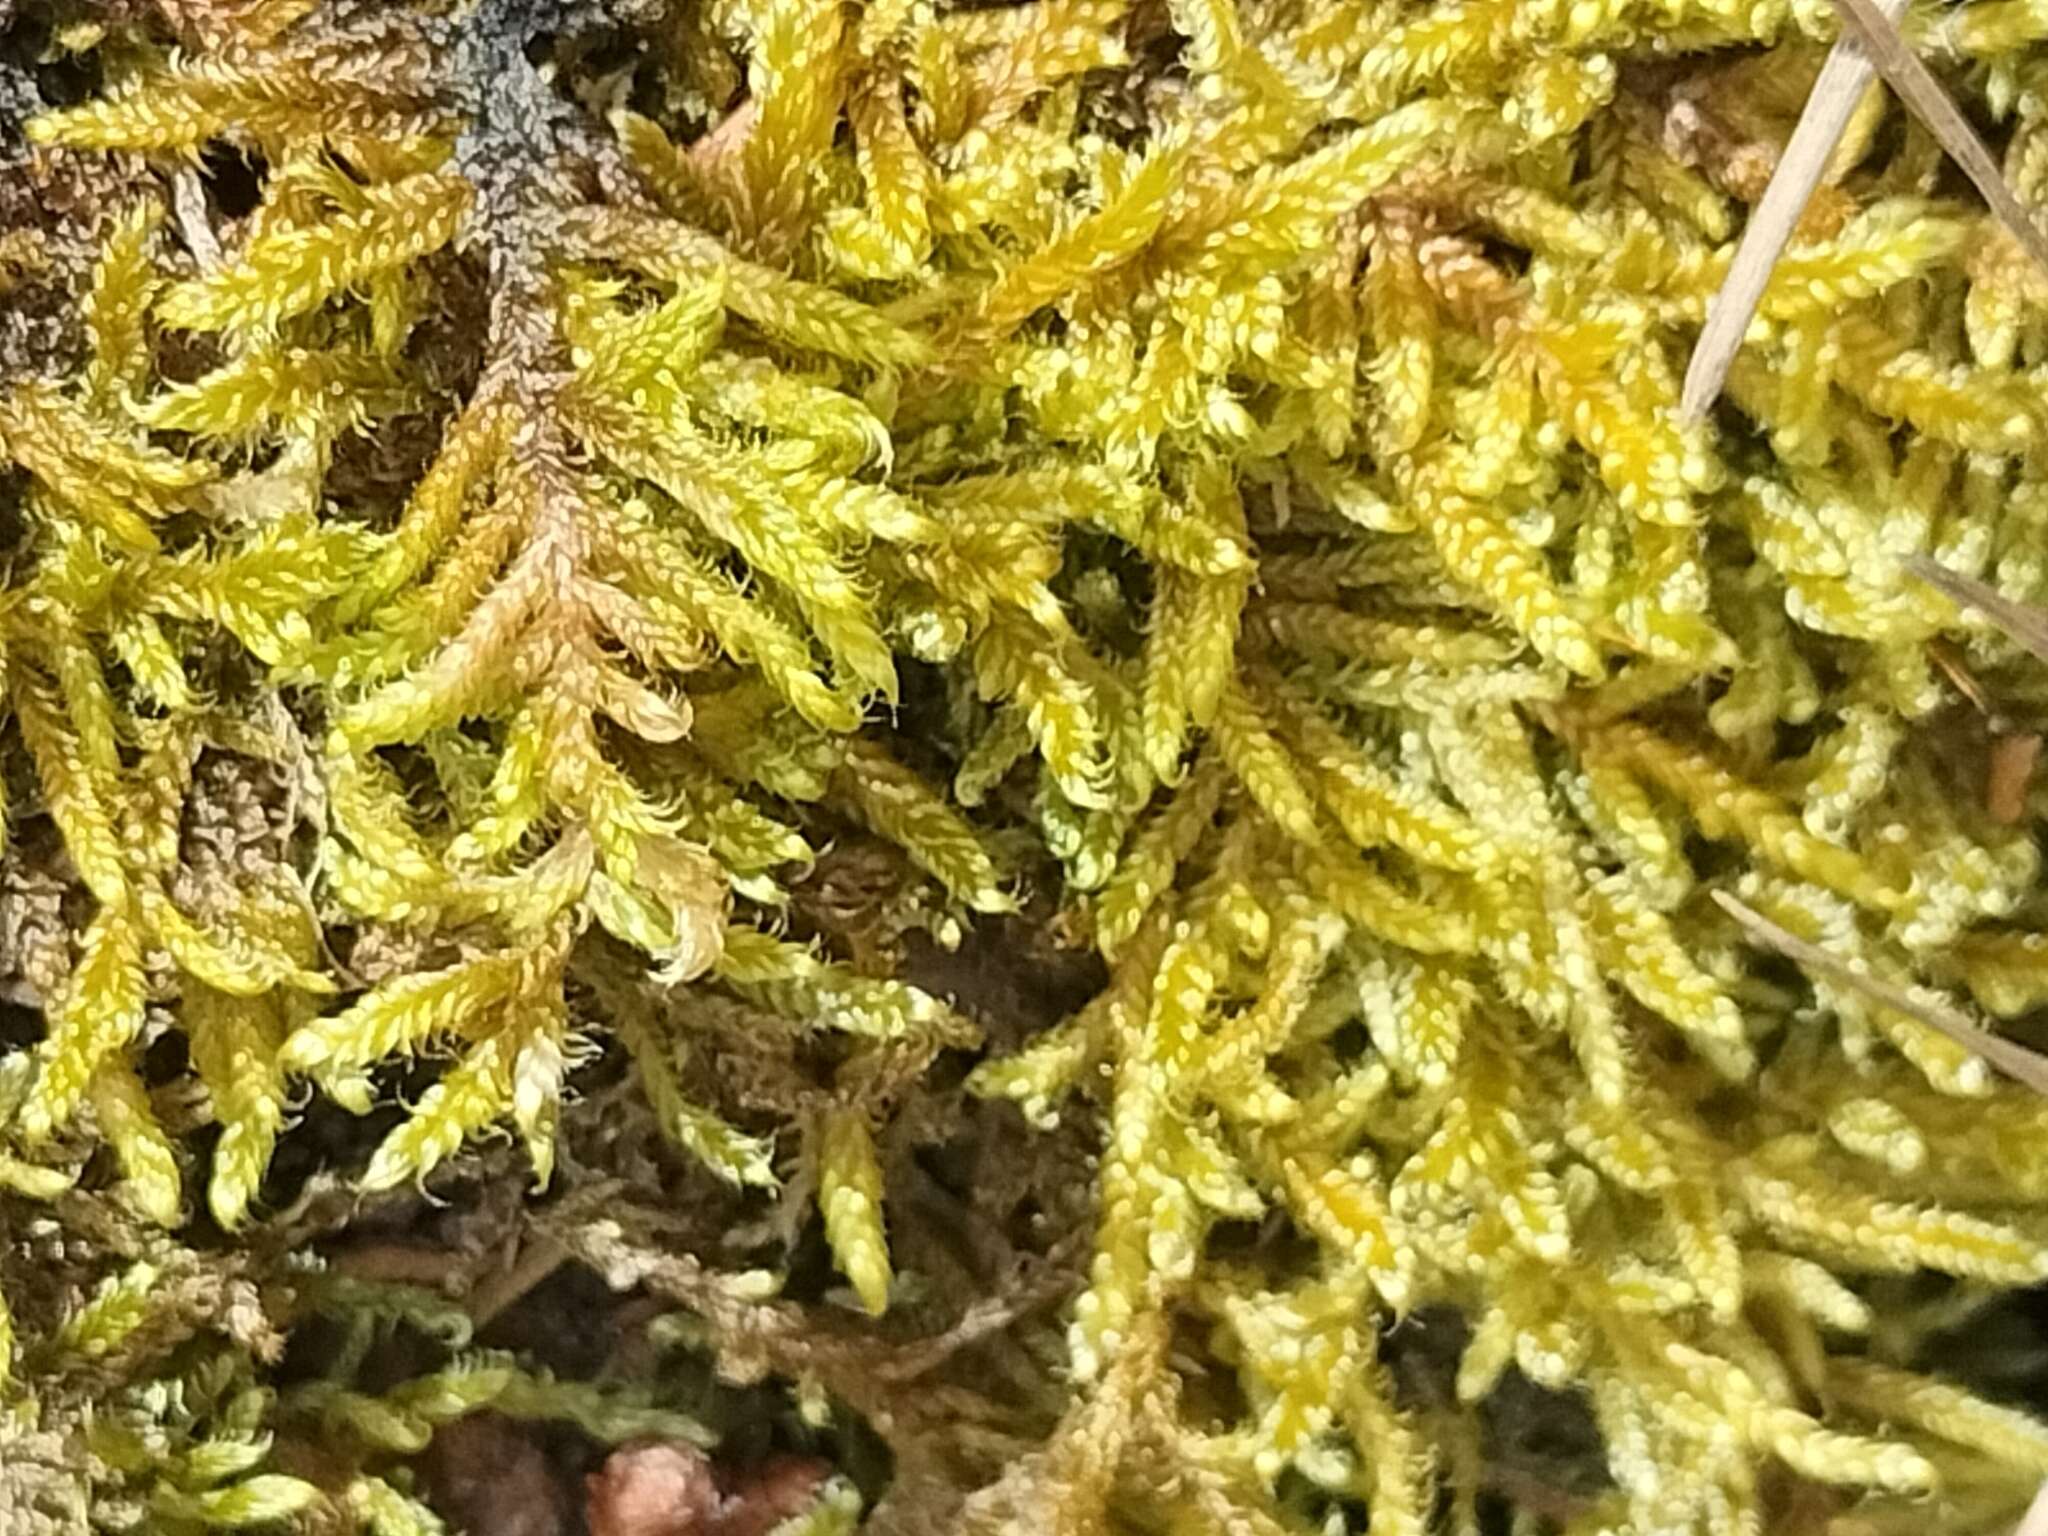 Image of hypnum moss